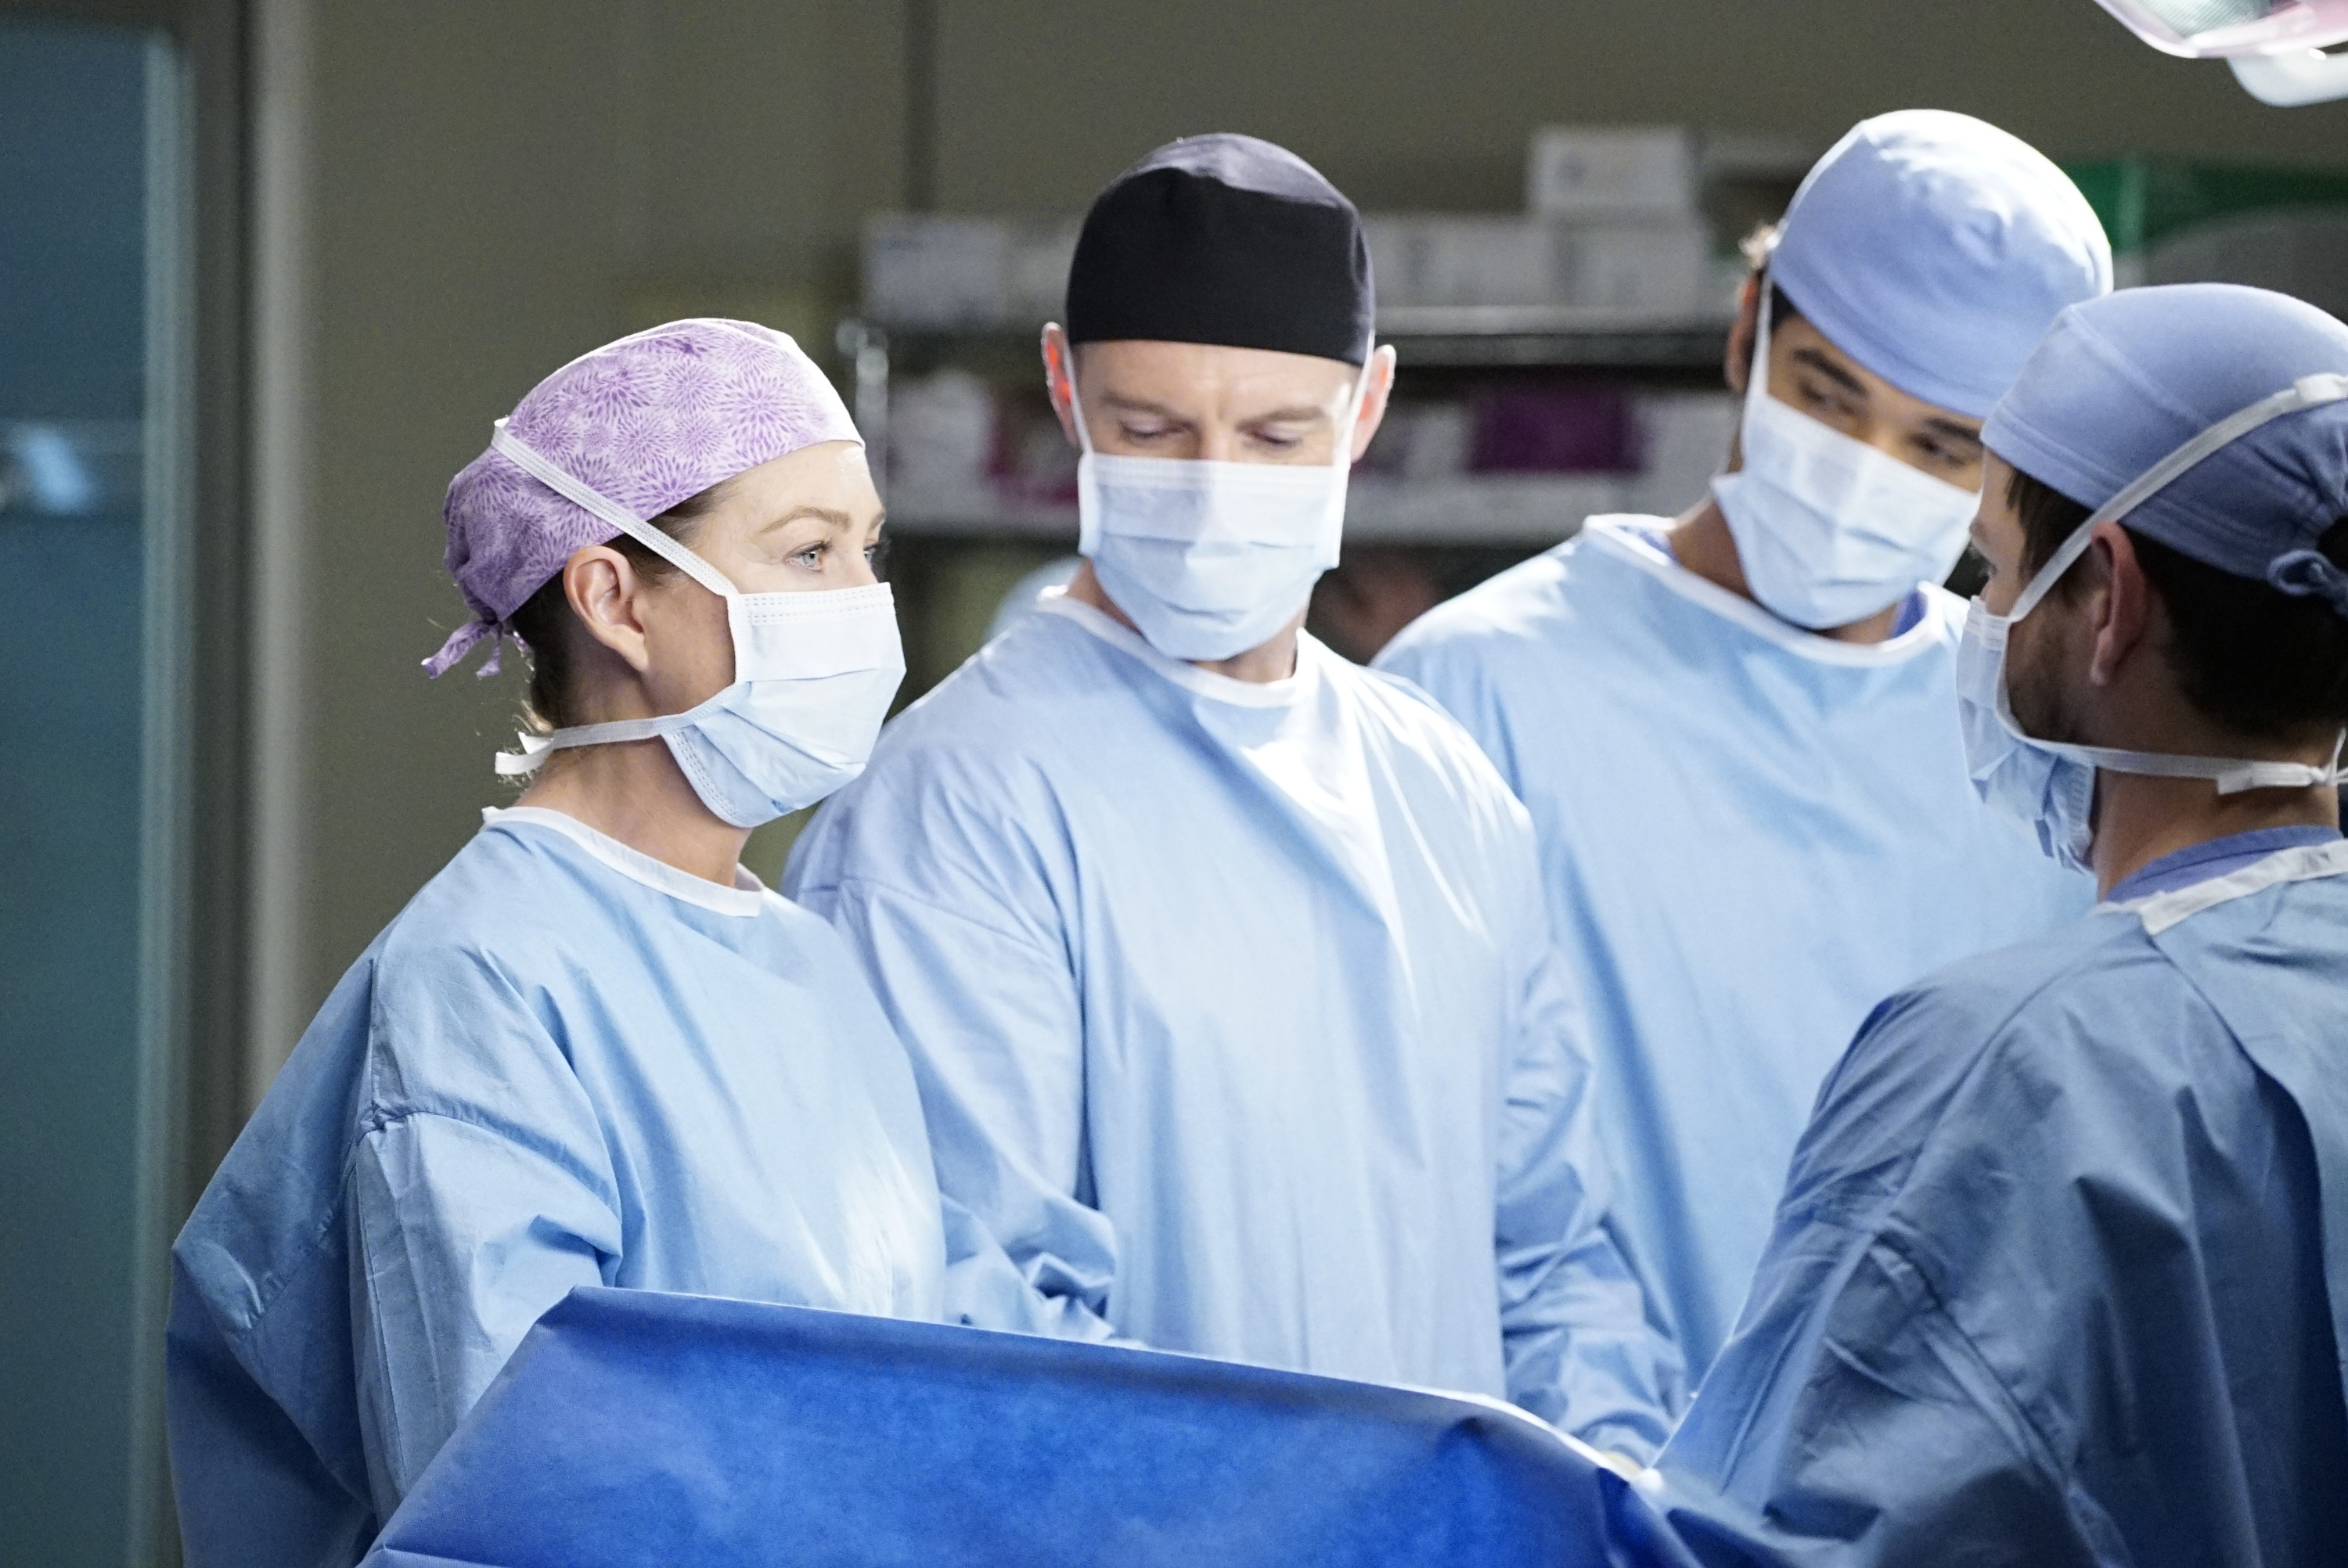 艾伦戴着面具在执行手术在一个场景从灰色# x27;解剖学